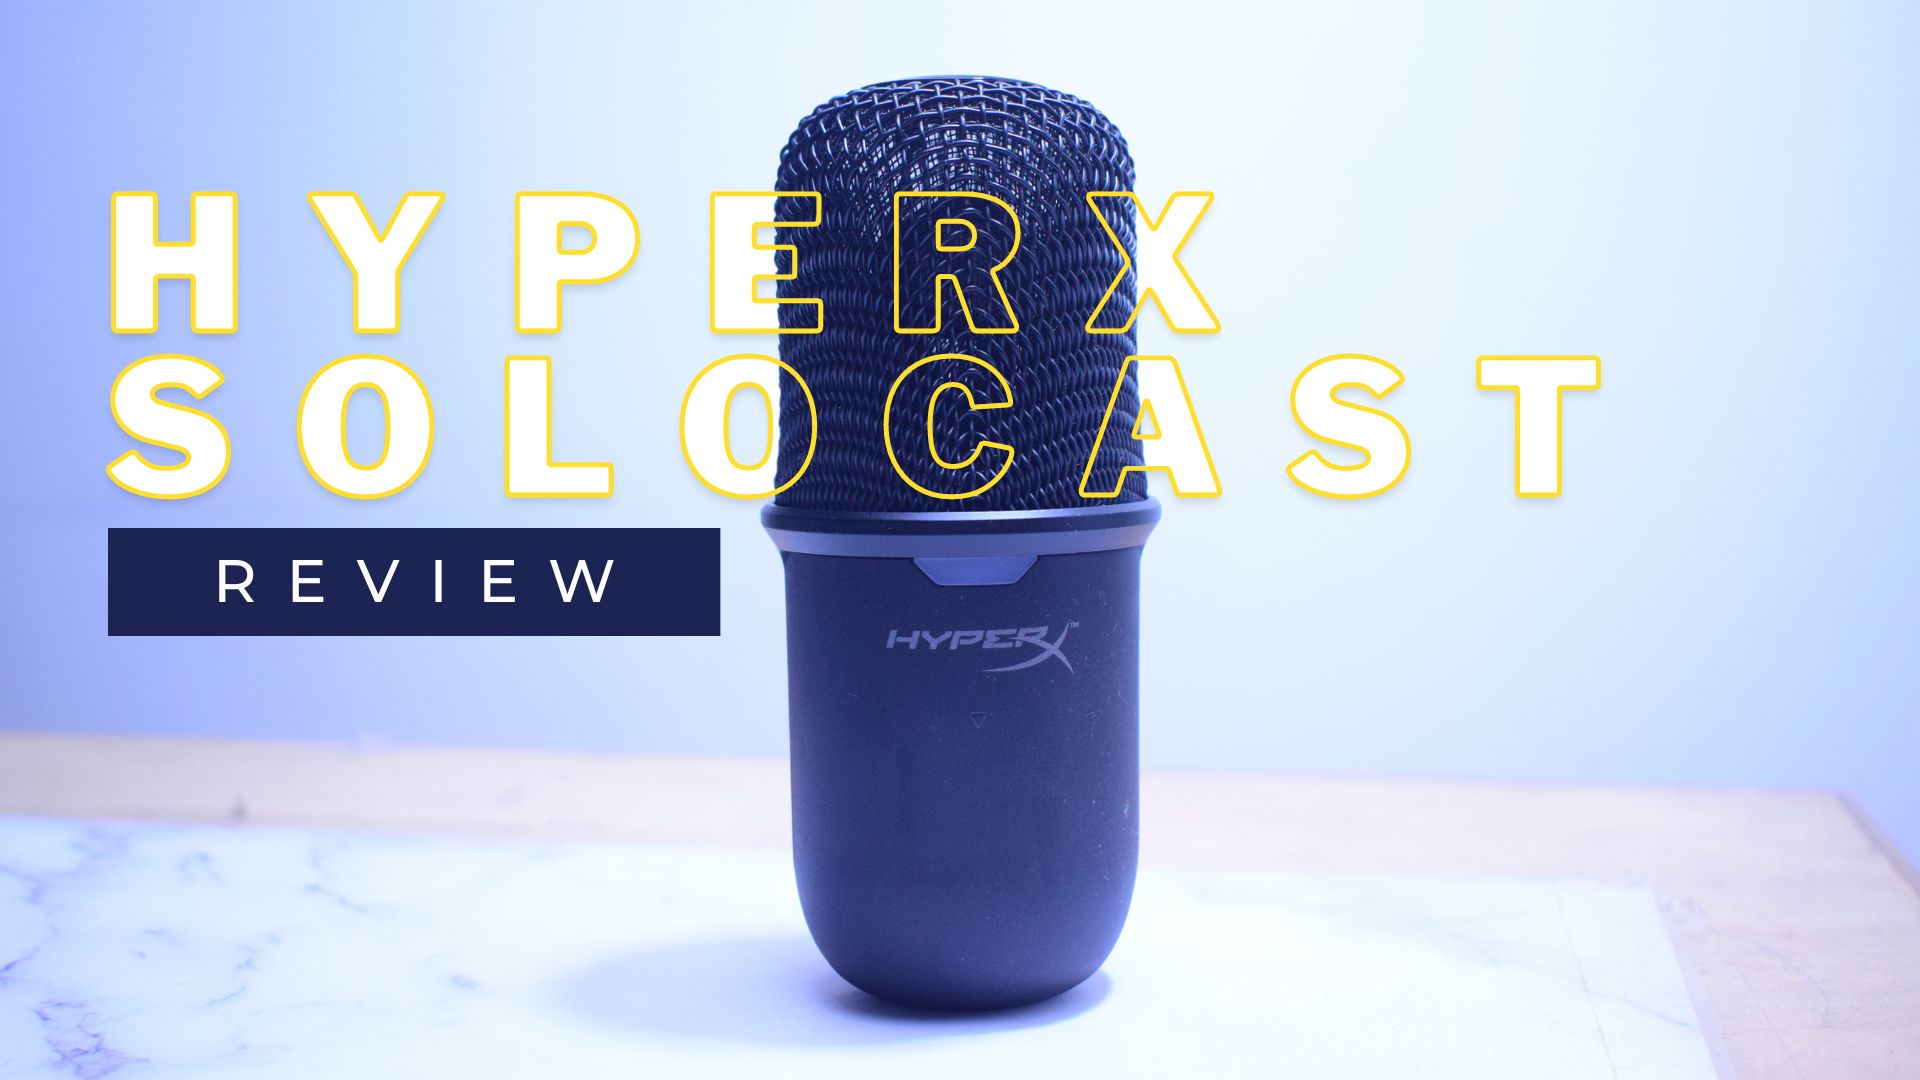 HyperX Solocast Review